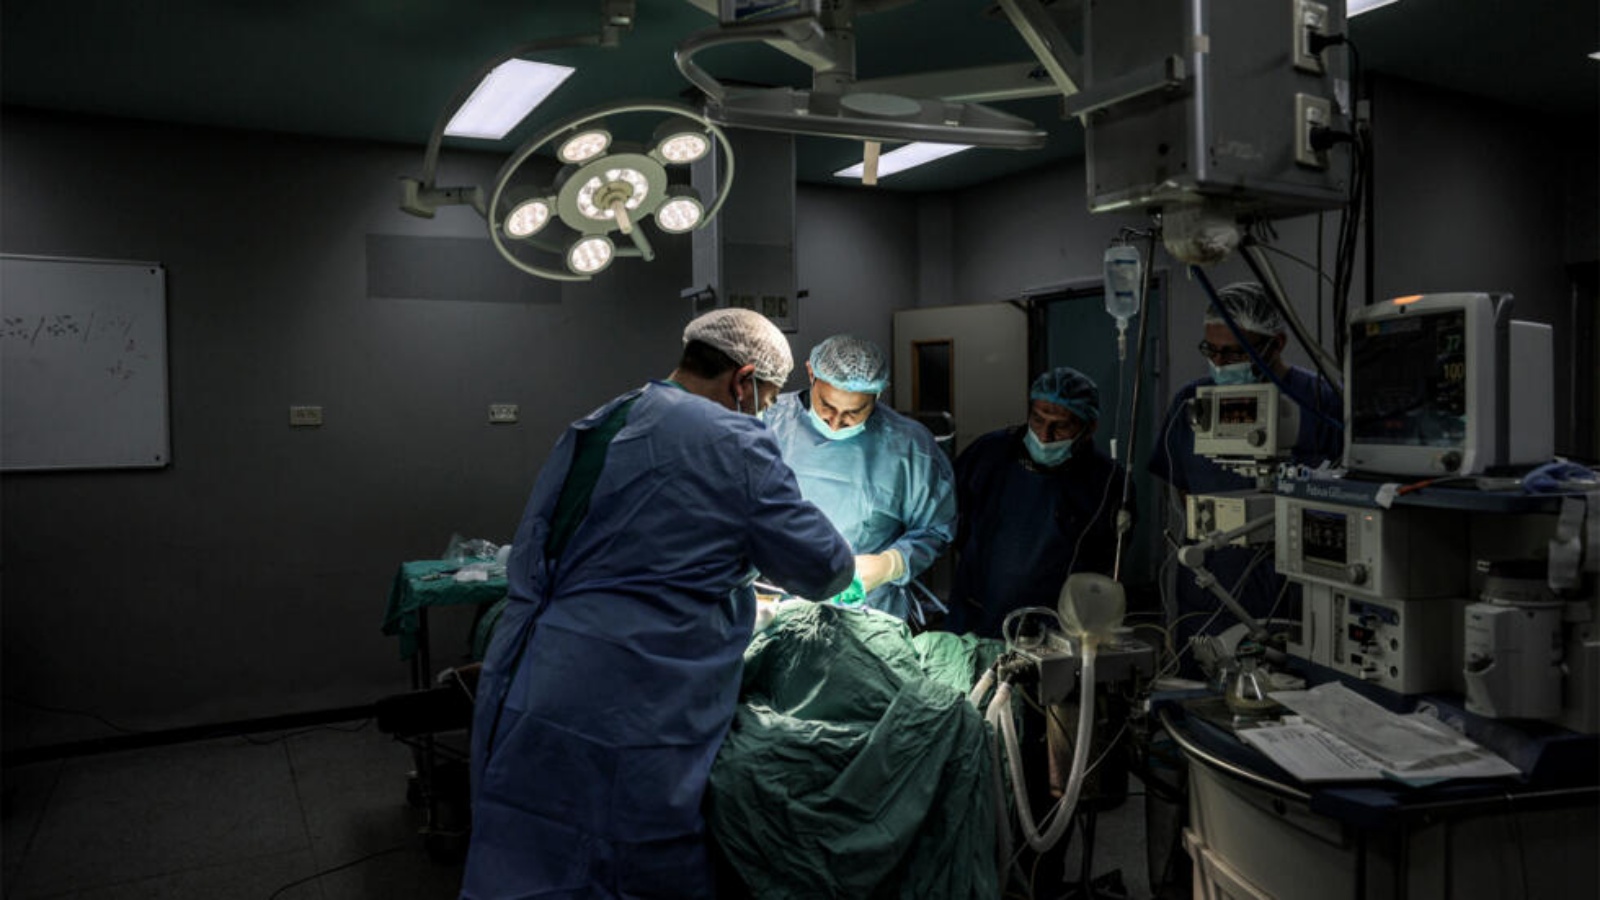 جراحان يجريان عملية في المستشفى الاوروبي في خان يونس في جنوب قطاع غزة في 31 كانون الاول/ديسمبر 2023. جراحان يجريان عملية في المستشفى الاوروبي في خان يونس في جنوب قطاع غزة في 31 كانون الاول (ديسمبر) 2023